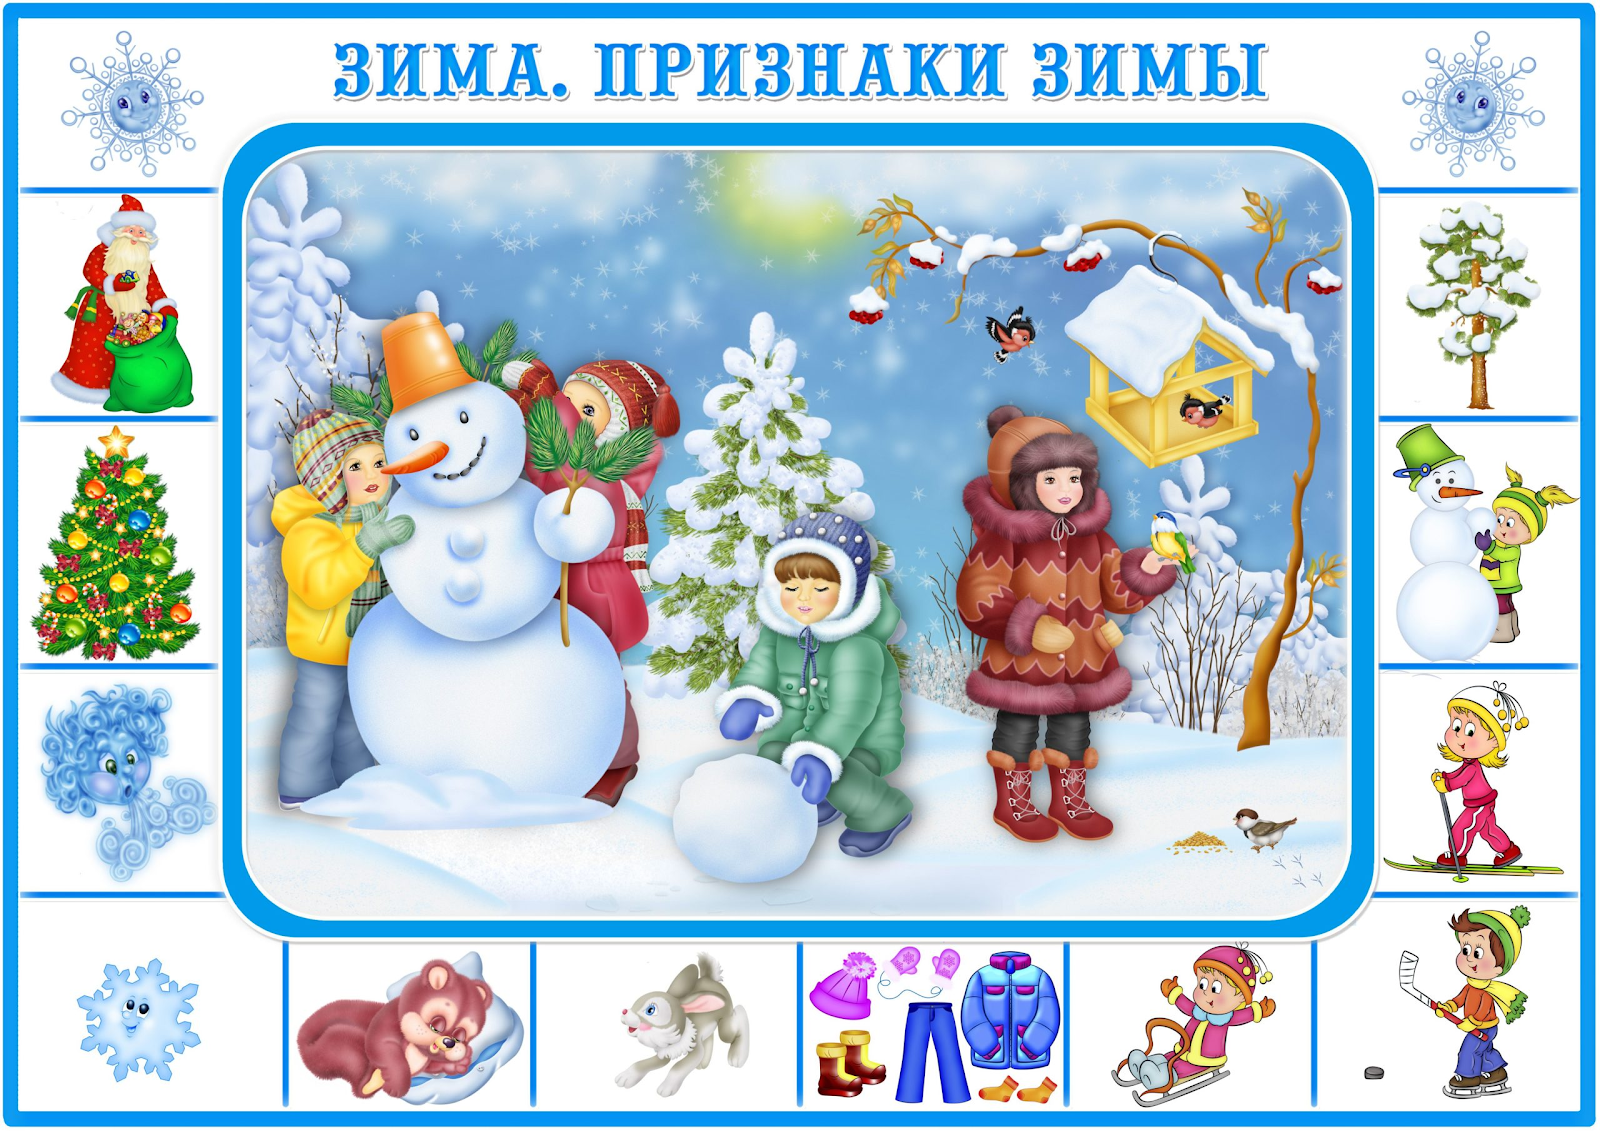 Изображение выглядит как рождество, снеговик, Мультфильм, мультфильм

Автоматически созданное описание